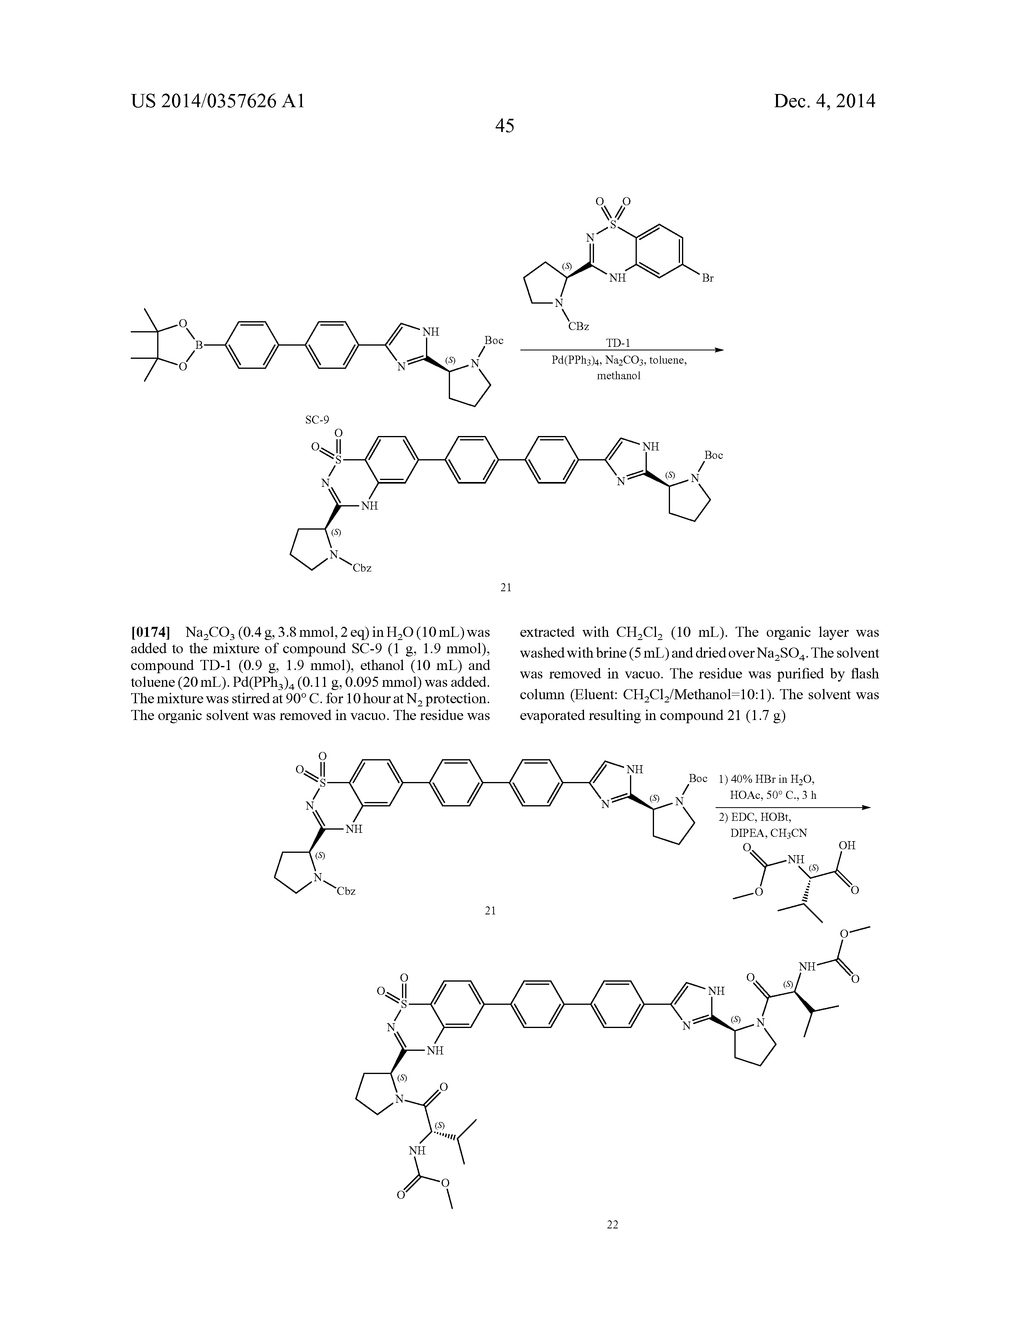 Hetero-Bicyclic Derivatives As HCV Inhibitors - diagram, schematic, and image 46